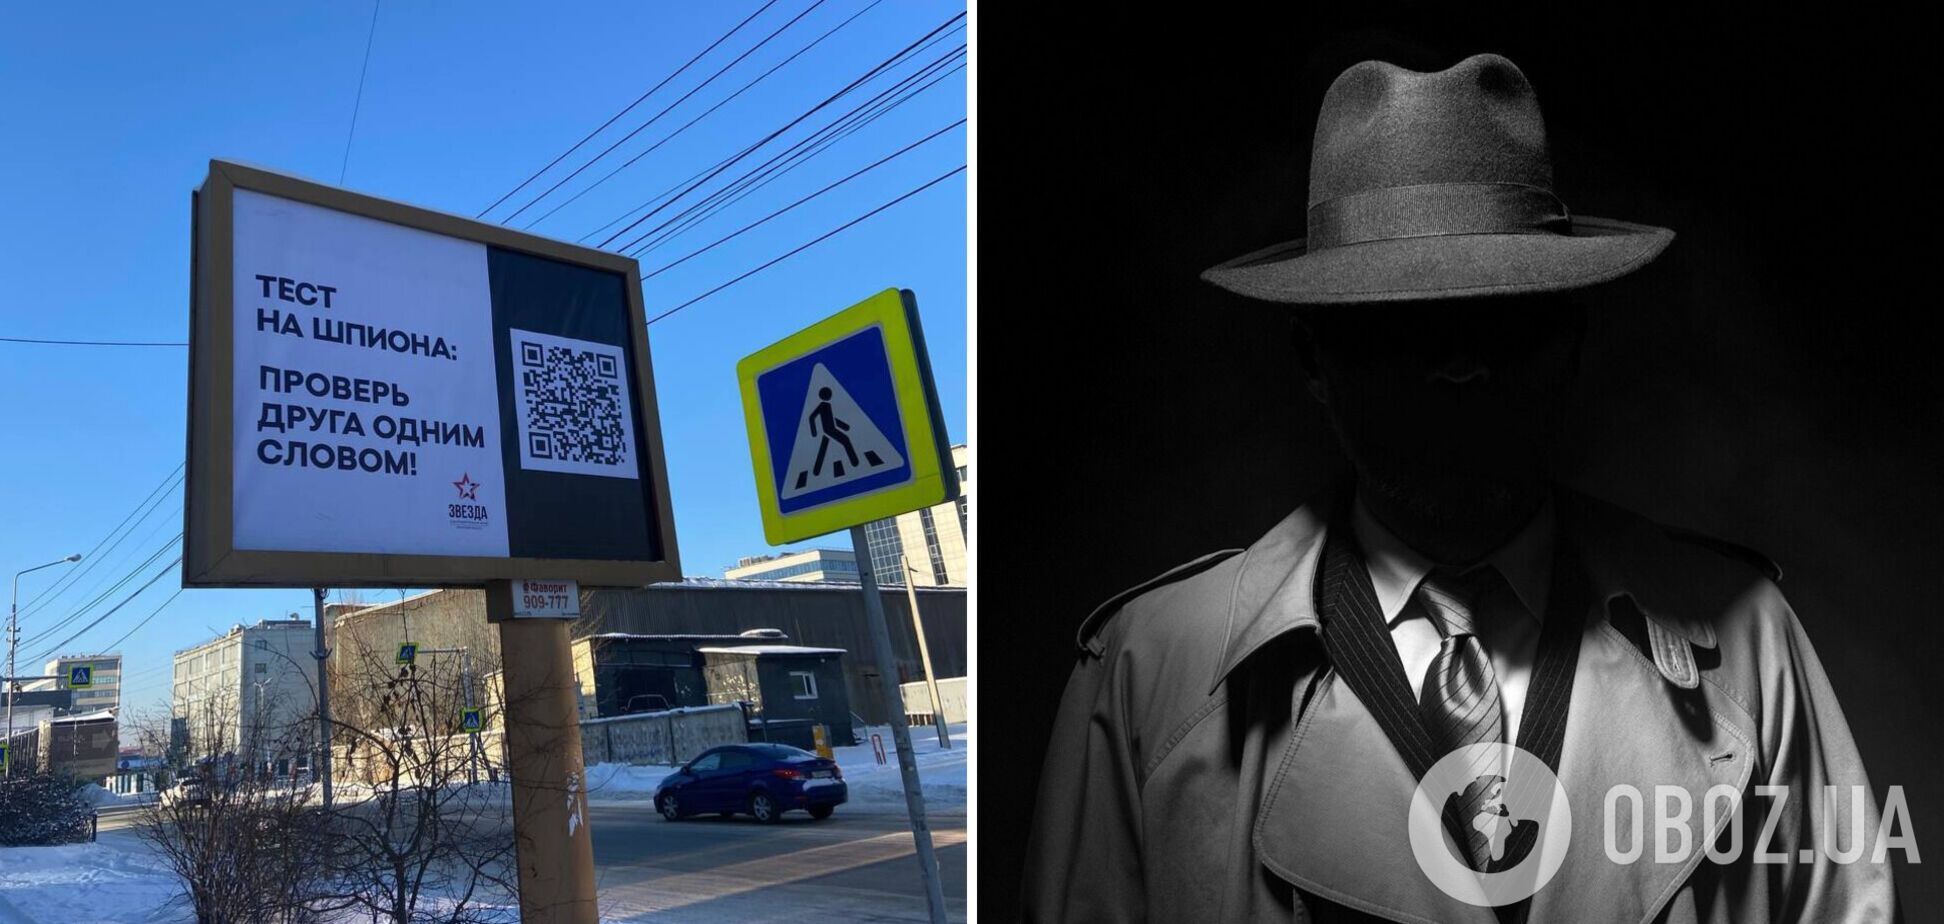 В России на билбордах разместили 'тесты на шпиона': проверять хотят с помощью двух слов. Фото